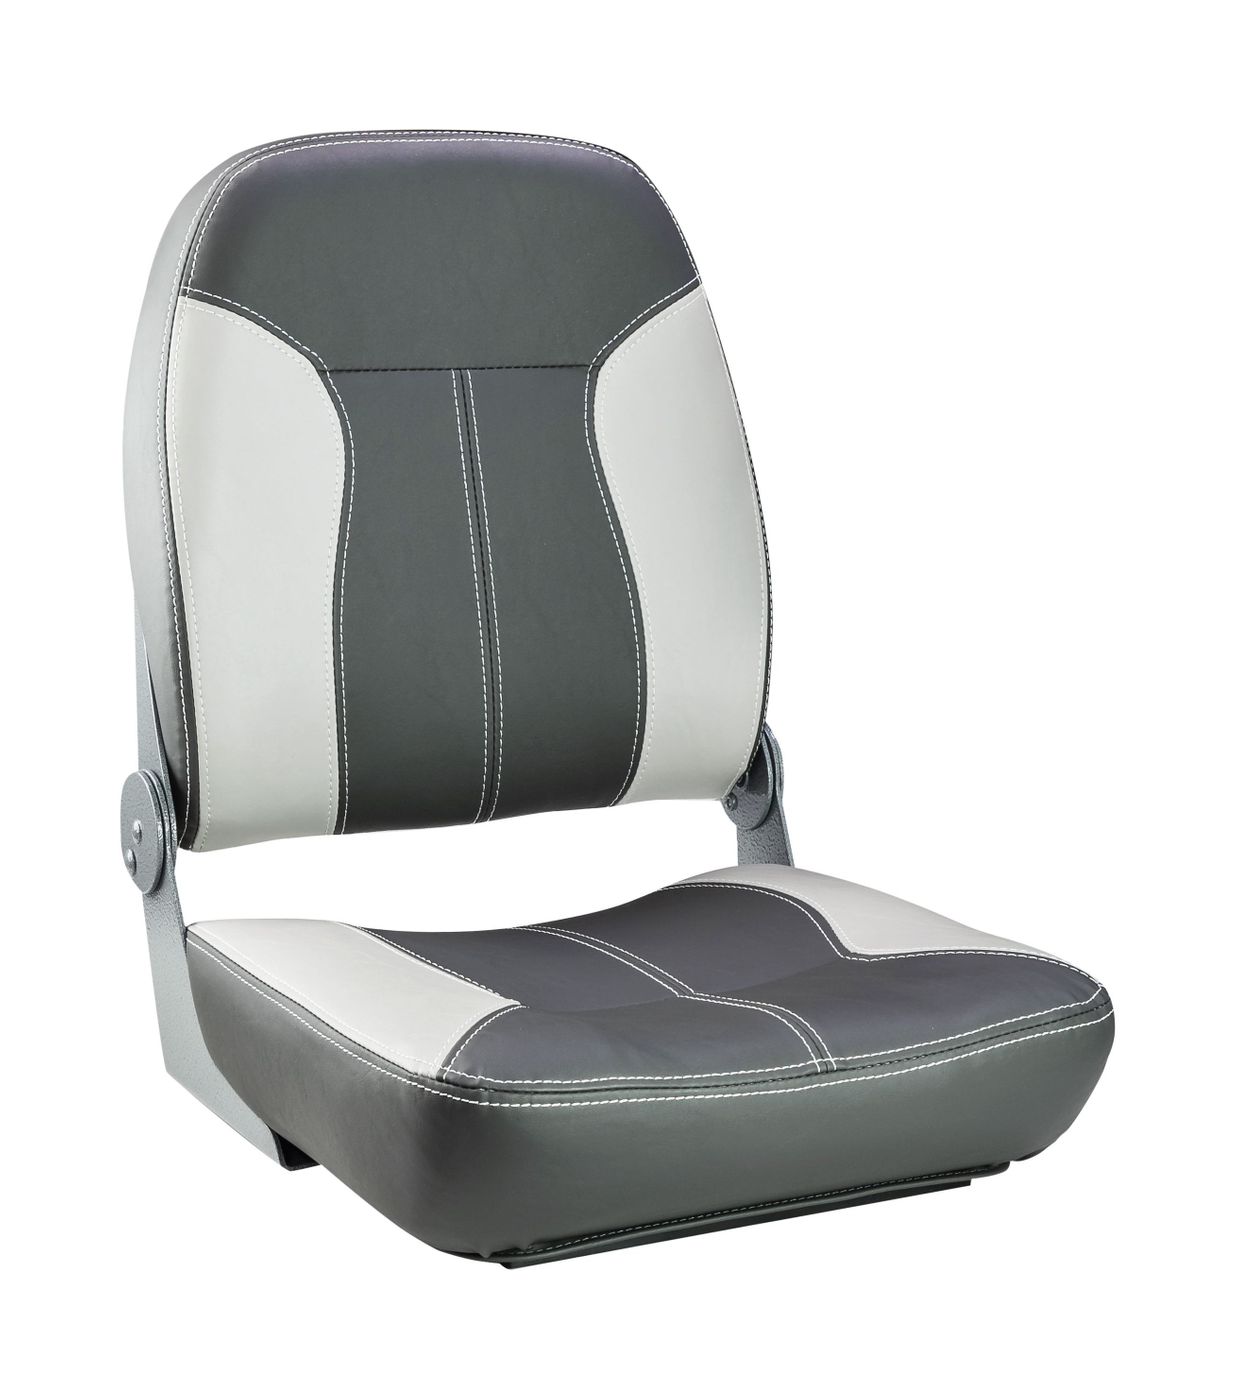 Кресло складное мягкое SPORT с высокой спинкой, серый/темно-серый 1040543 кресло складное premium серый темно серый 106202501